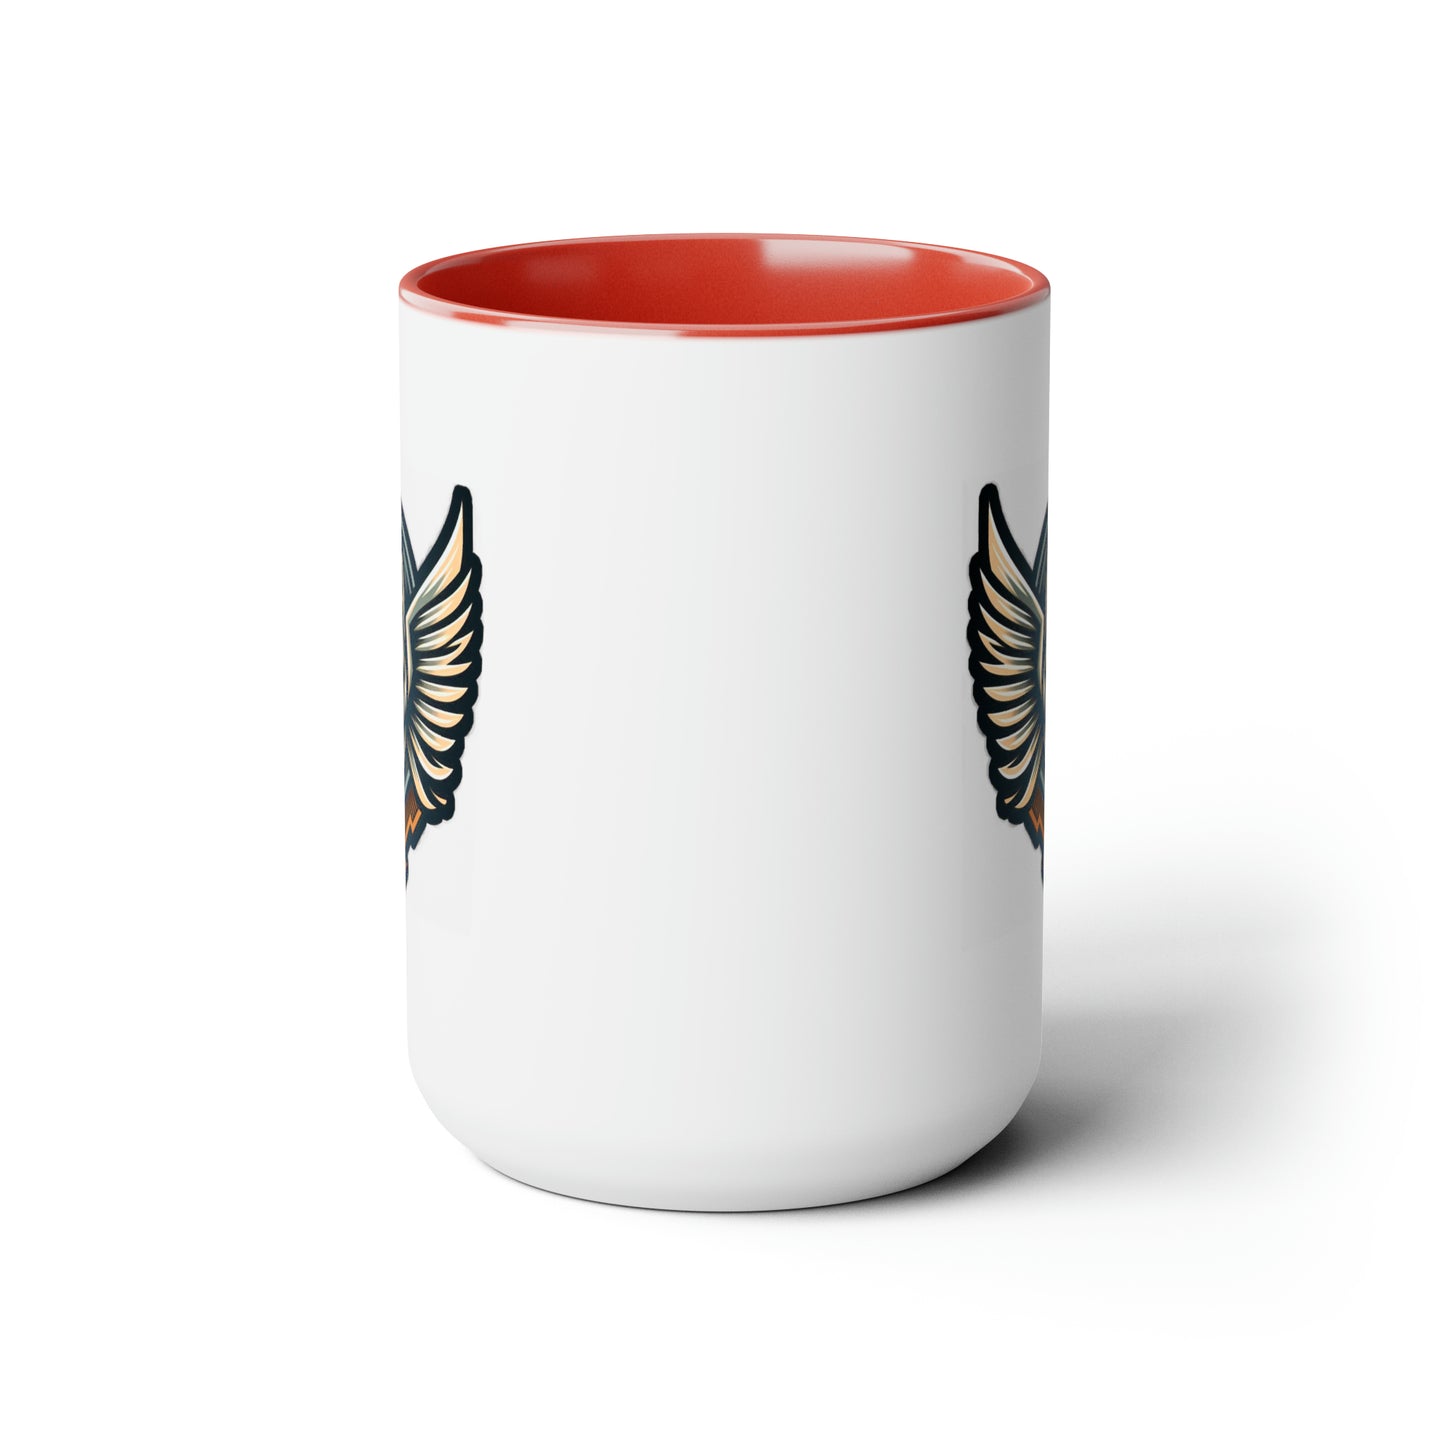 Wolf Logo Coffee Mug 15oz